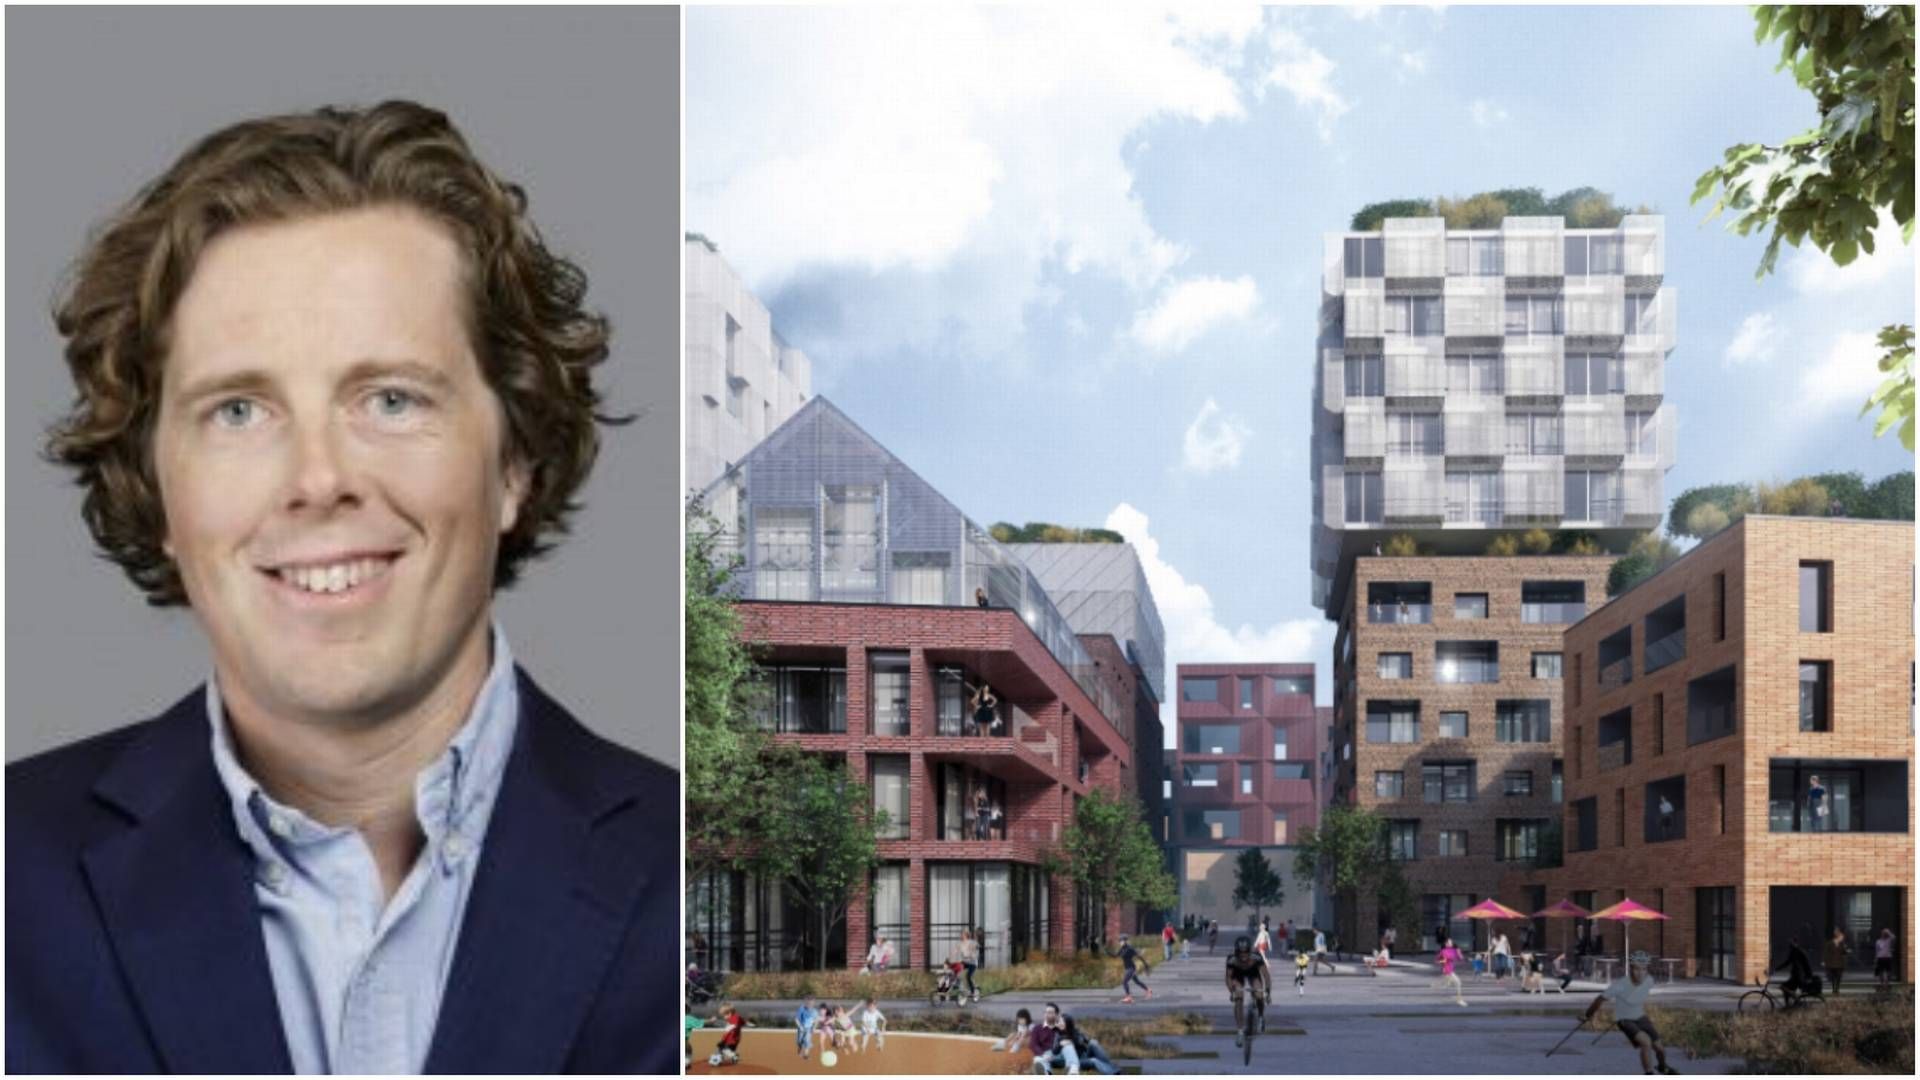 VIL BYGGE STORT: Axel Bryde og Oxer Eiendom vil bygge 800-1000 boliger i Kabelgata på Økern i Oslo | Foto: Oxer Eiendom